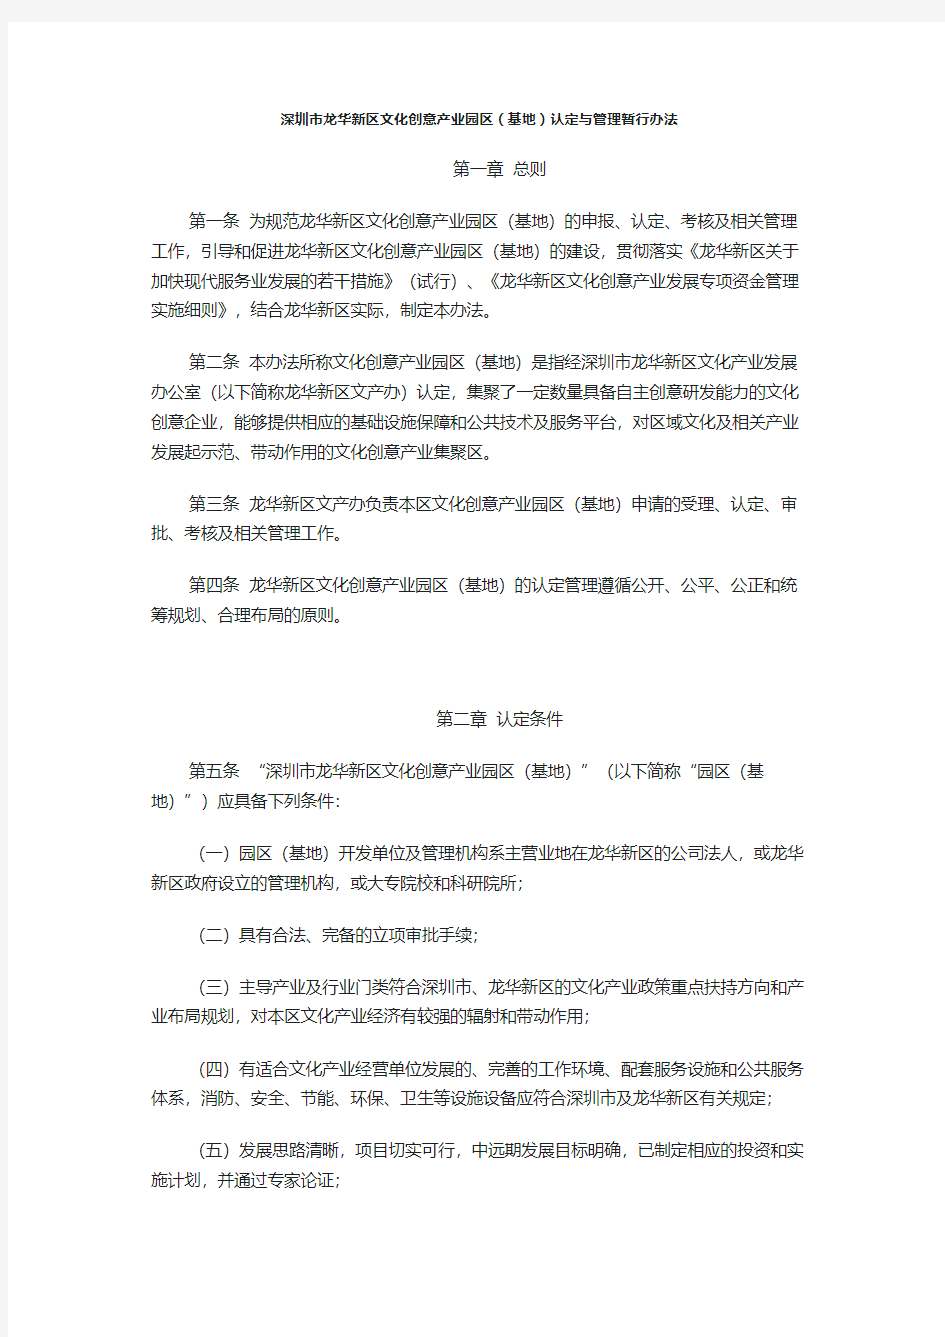 深圳市龙华新区文化创意产业园区(基地)认定与管理暂行办法